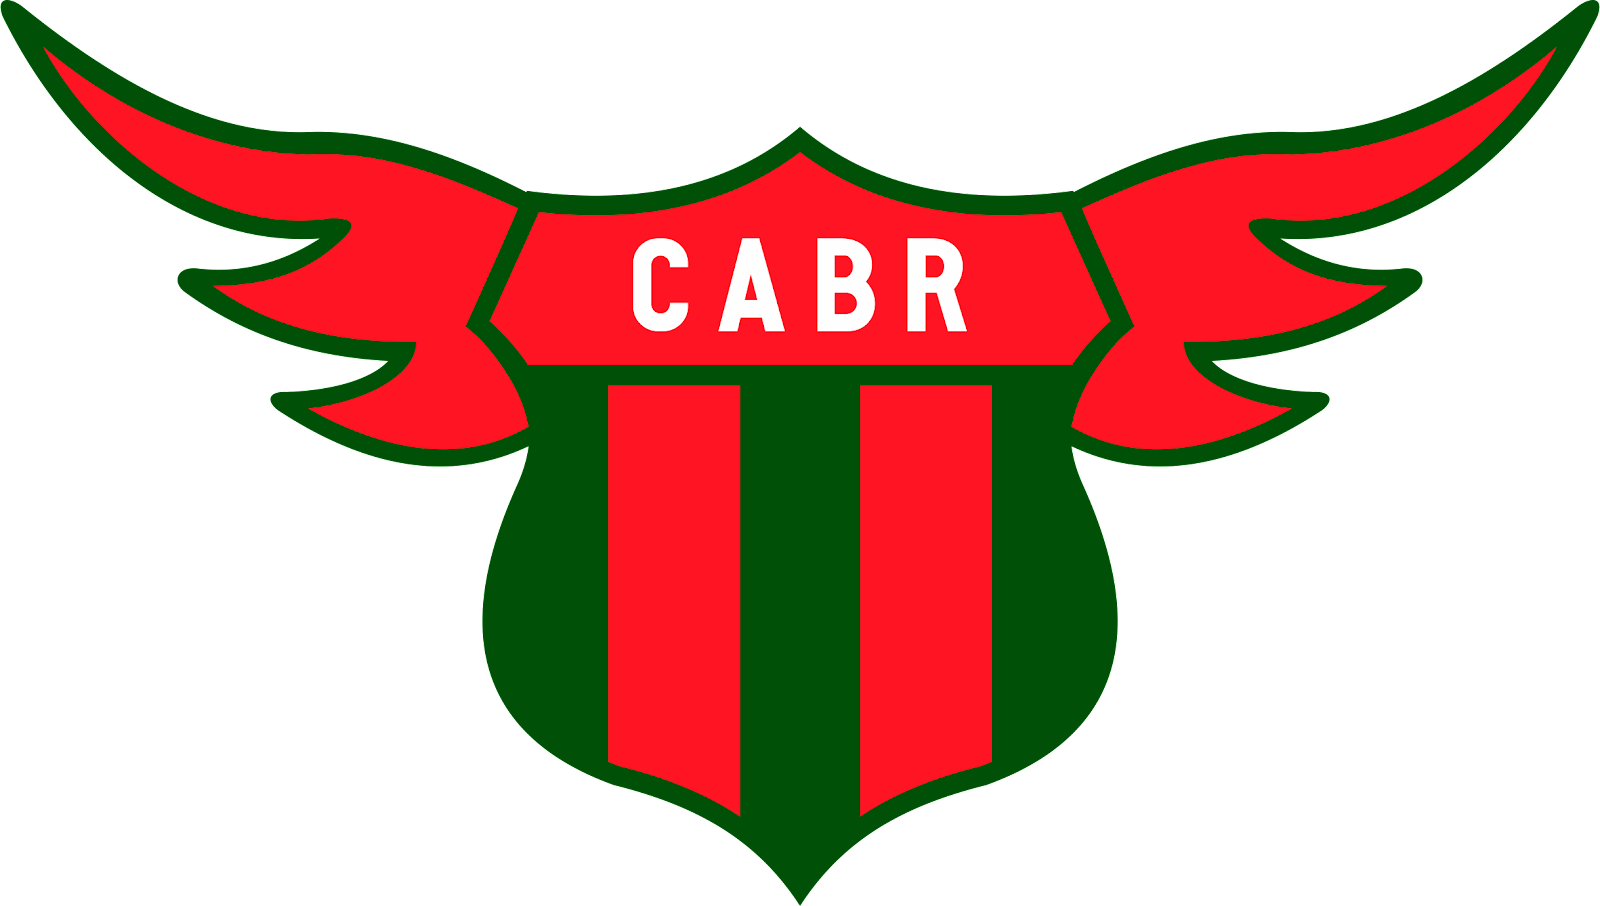 Racing Club of Montevideo, Uruguay crest.